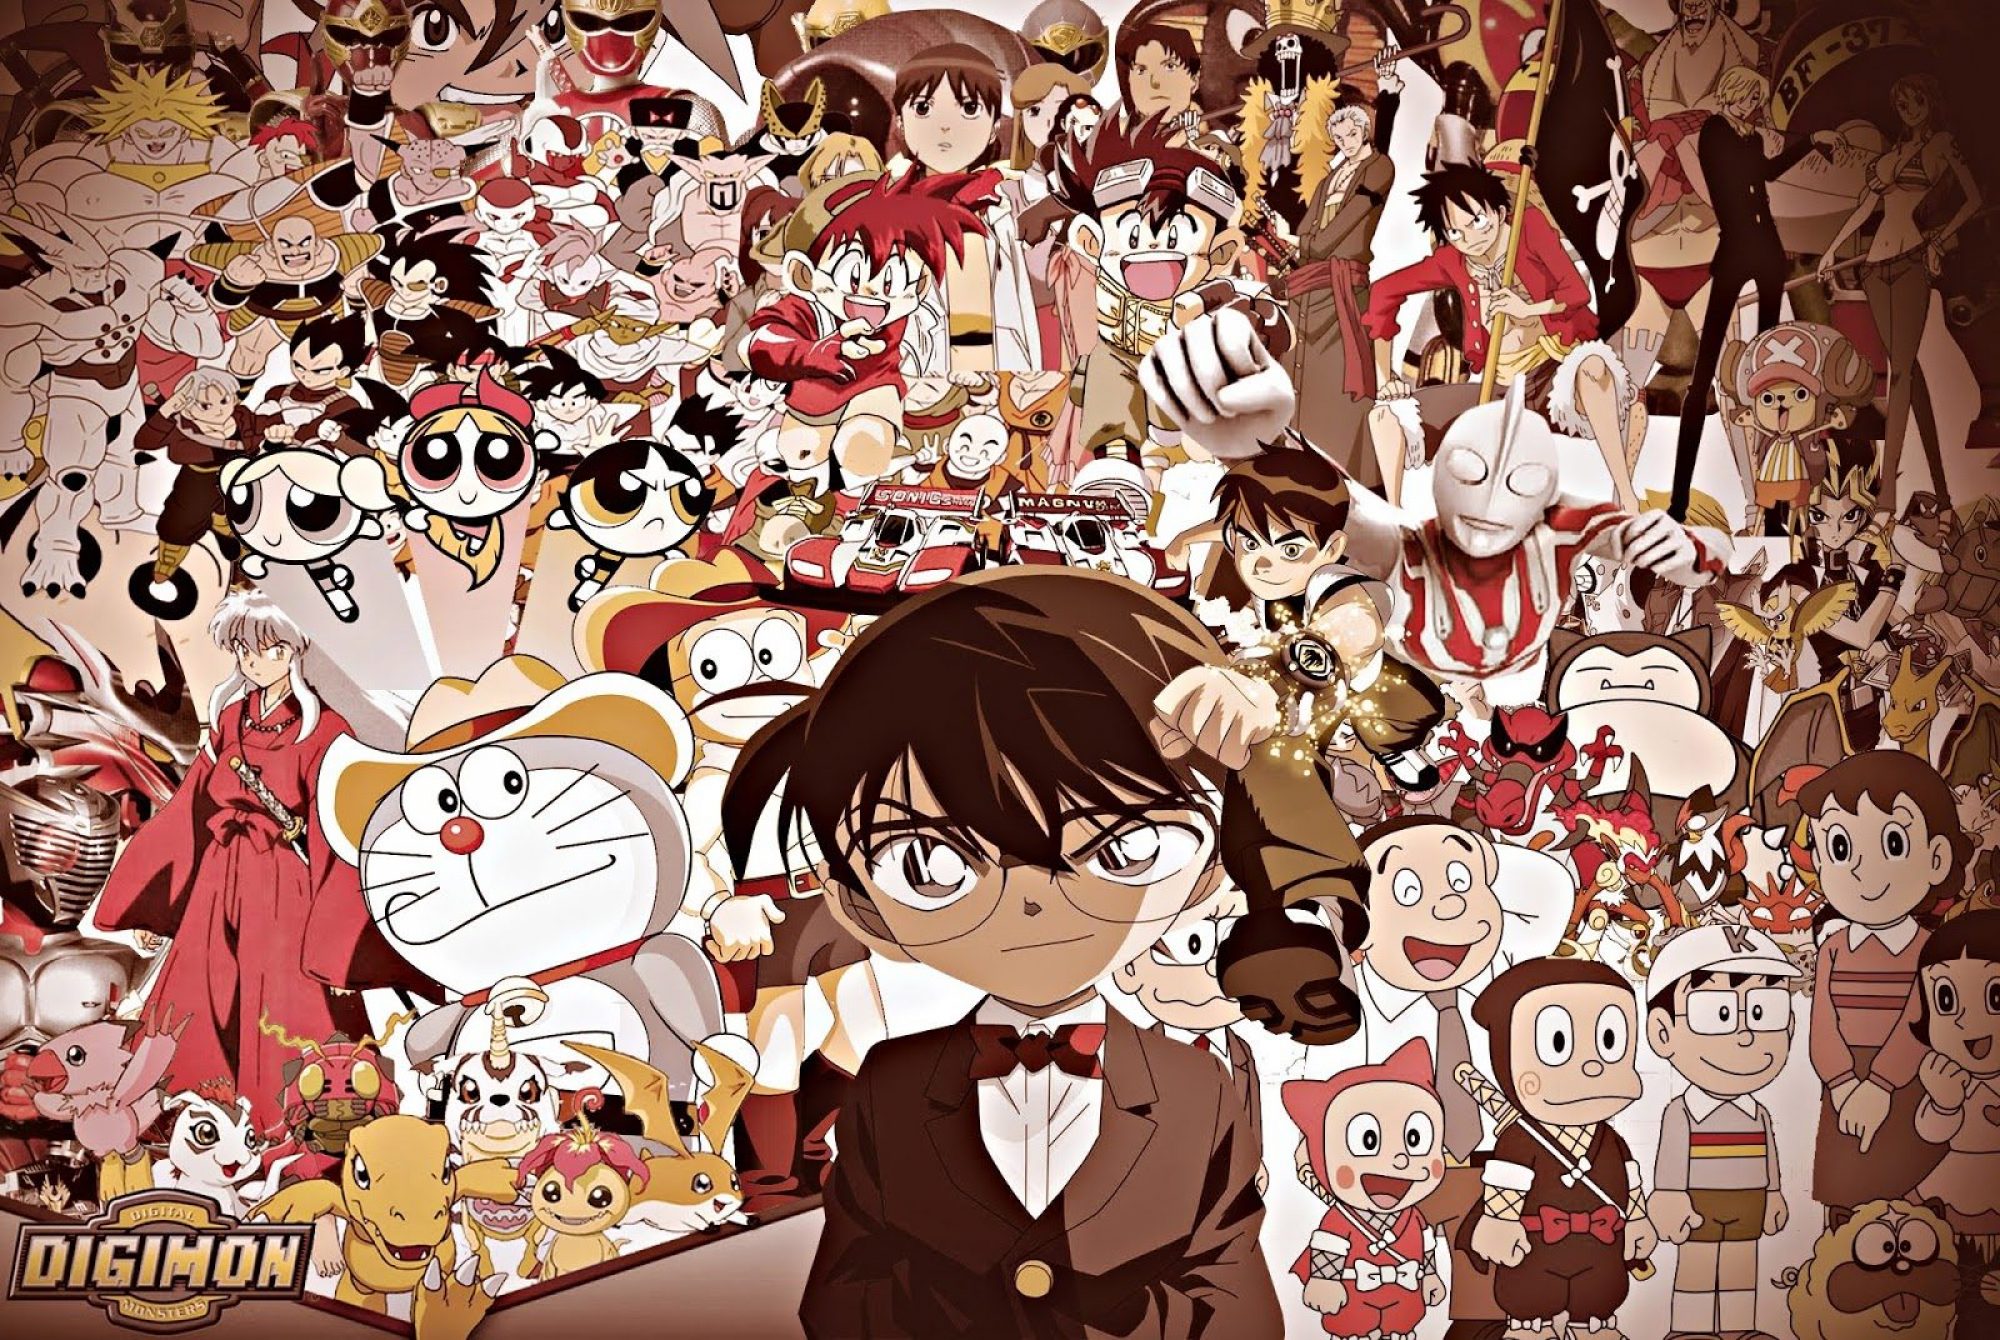 Daftar Anime Yang Pernah Tayang Di Stasiun TV Indonesia Cartoon